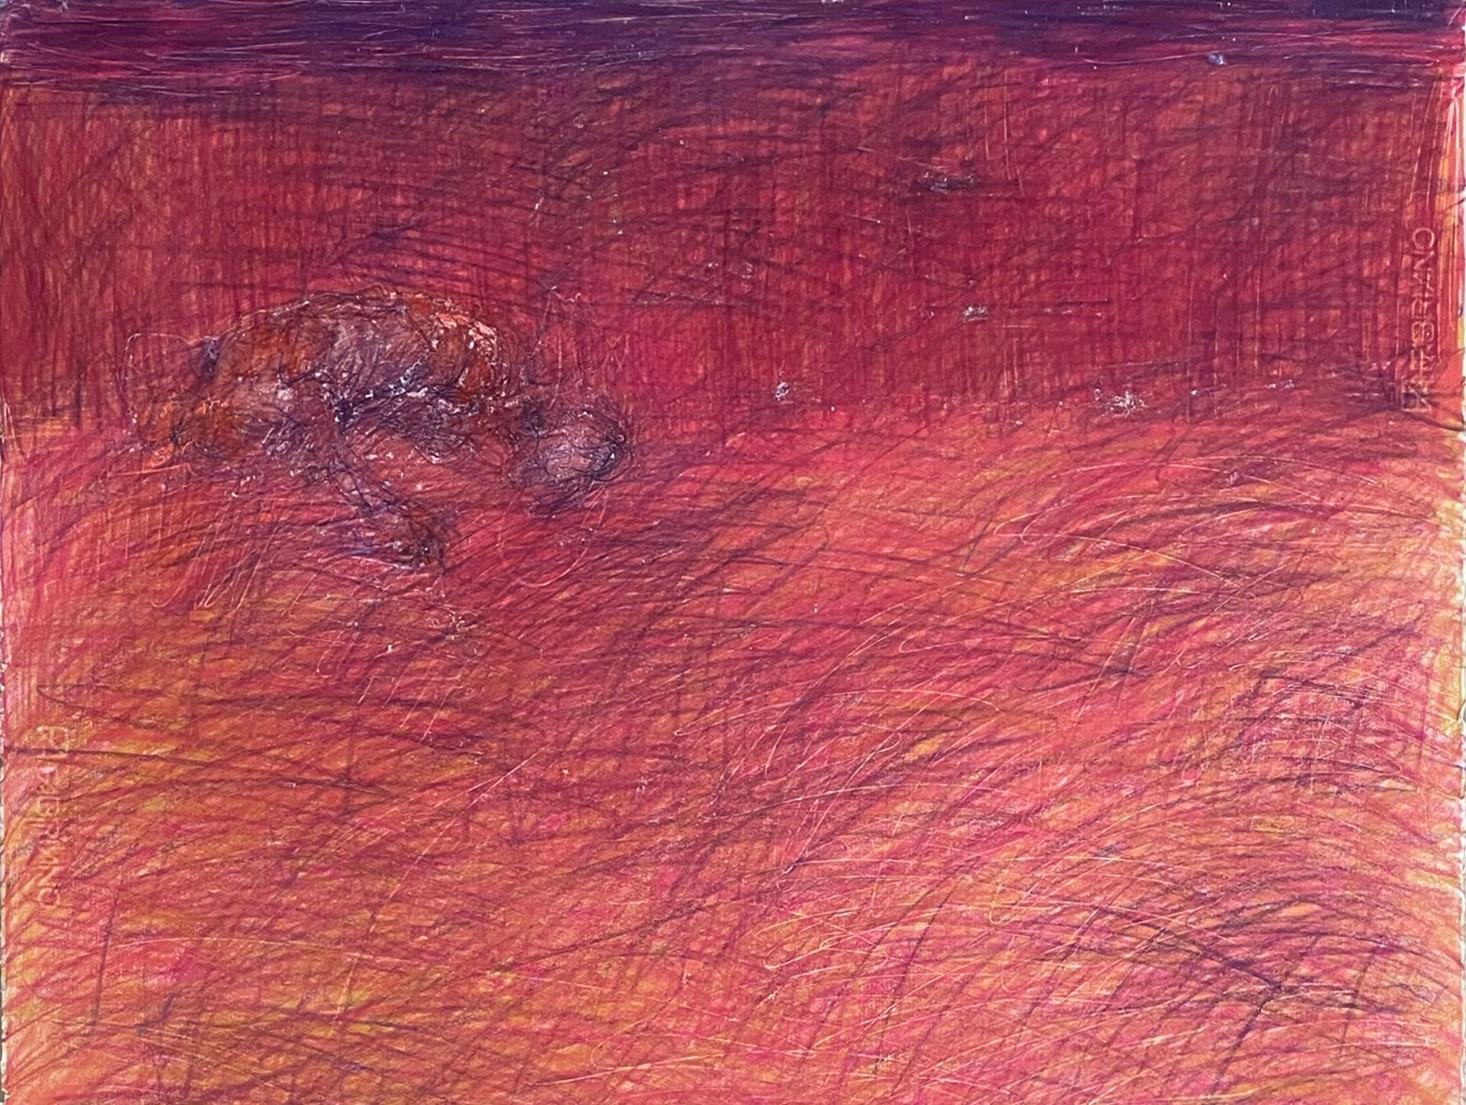 Ohne Titel_Body Remains on the Field – Rot, Zeitgenössisch, 21. Jahrhundert, Landschaft – Art von Zsolt Berszán